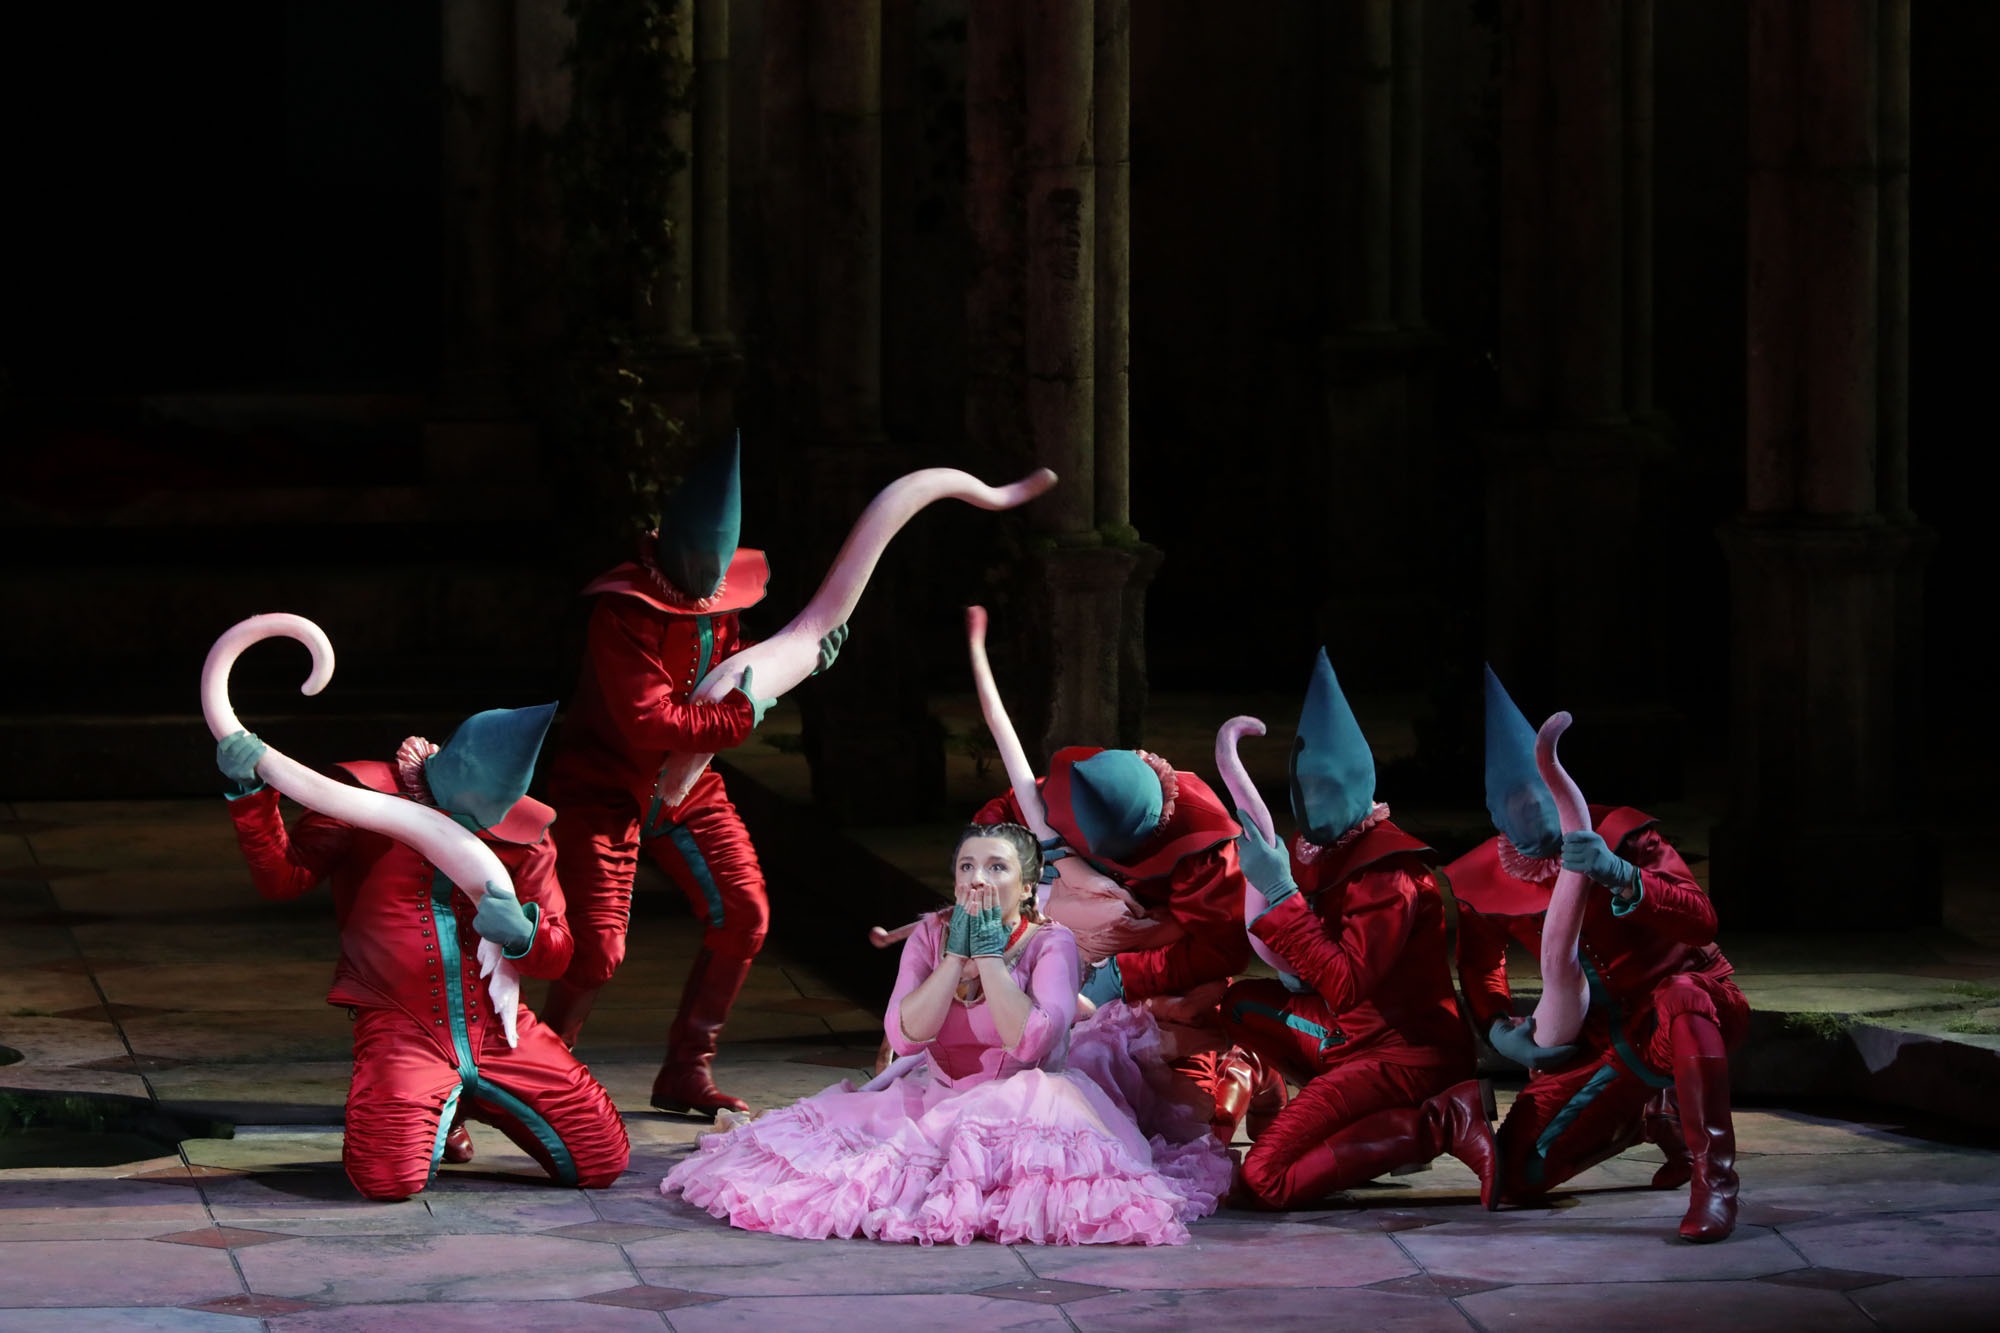 Una escena de "Rusalka" en La Scala / Foto: Brescia e Amisano